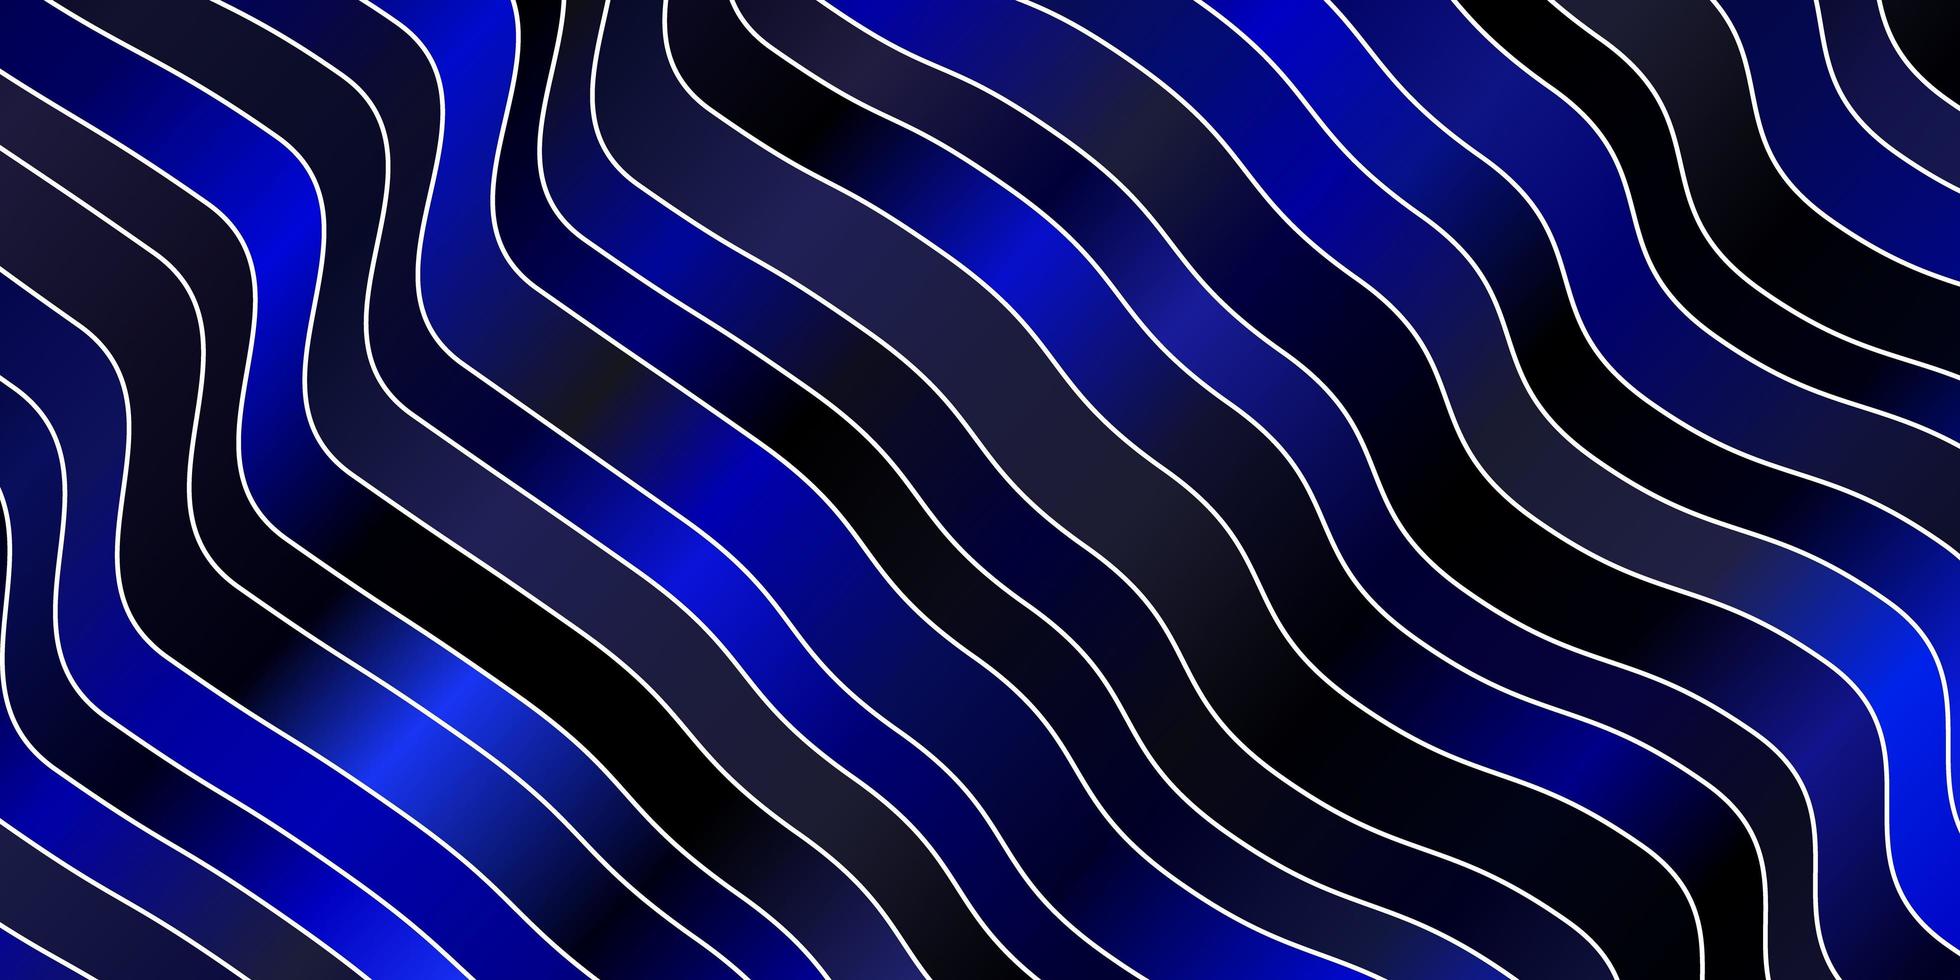 trama vettoriale blu scuro con linee ironiche